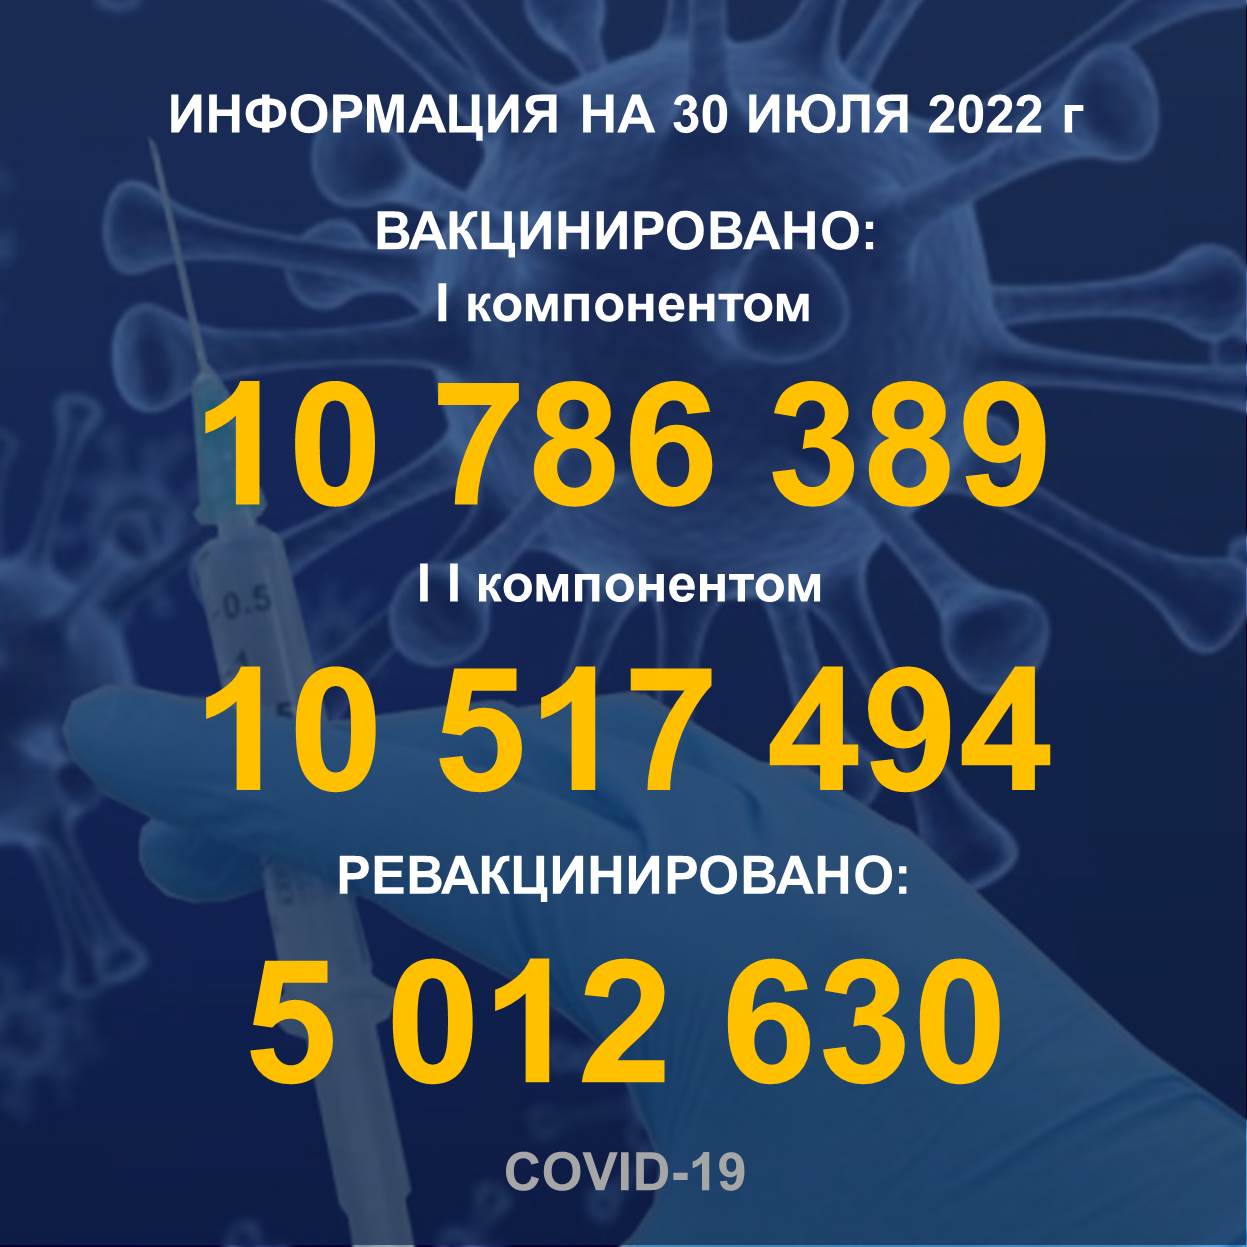 I компонентом 10 786 389 человек провакцинировано в Казахстане на 30.07.2022 г, II компонентом 10 517 494 человек. Ревакцинировано – 5 027 433